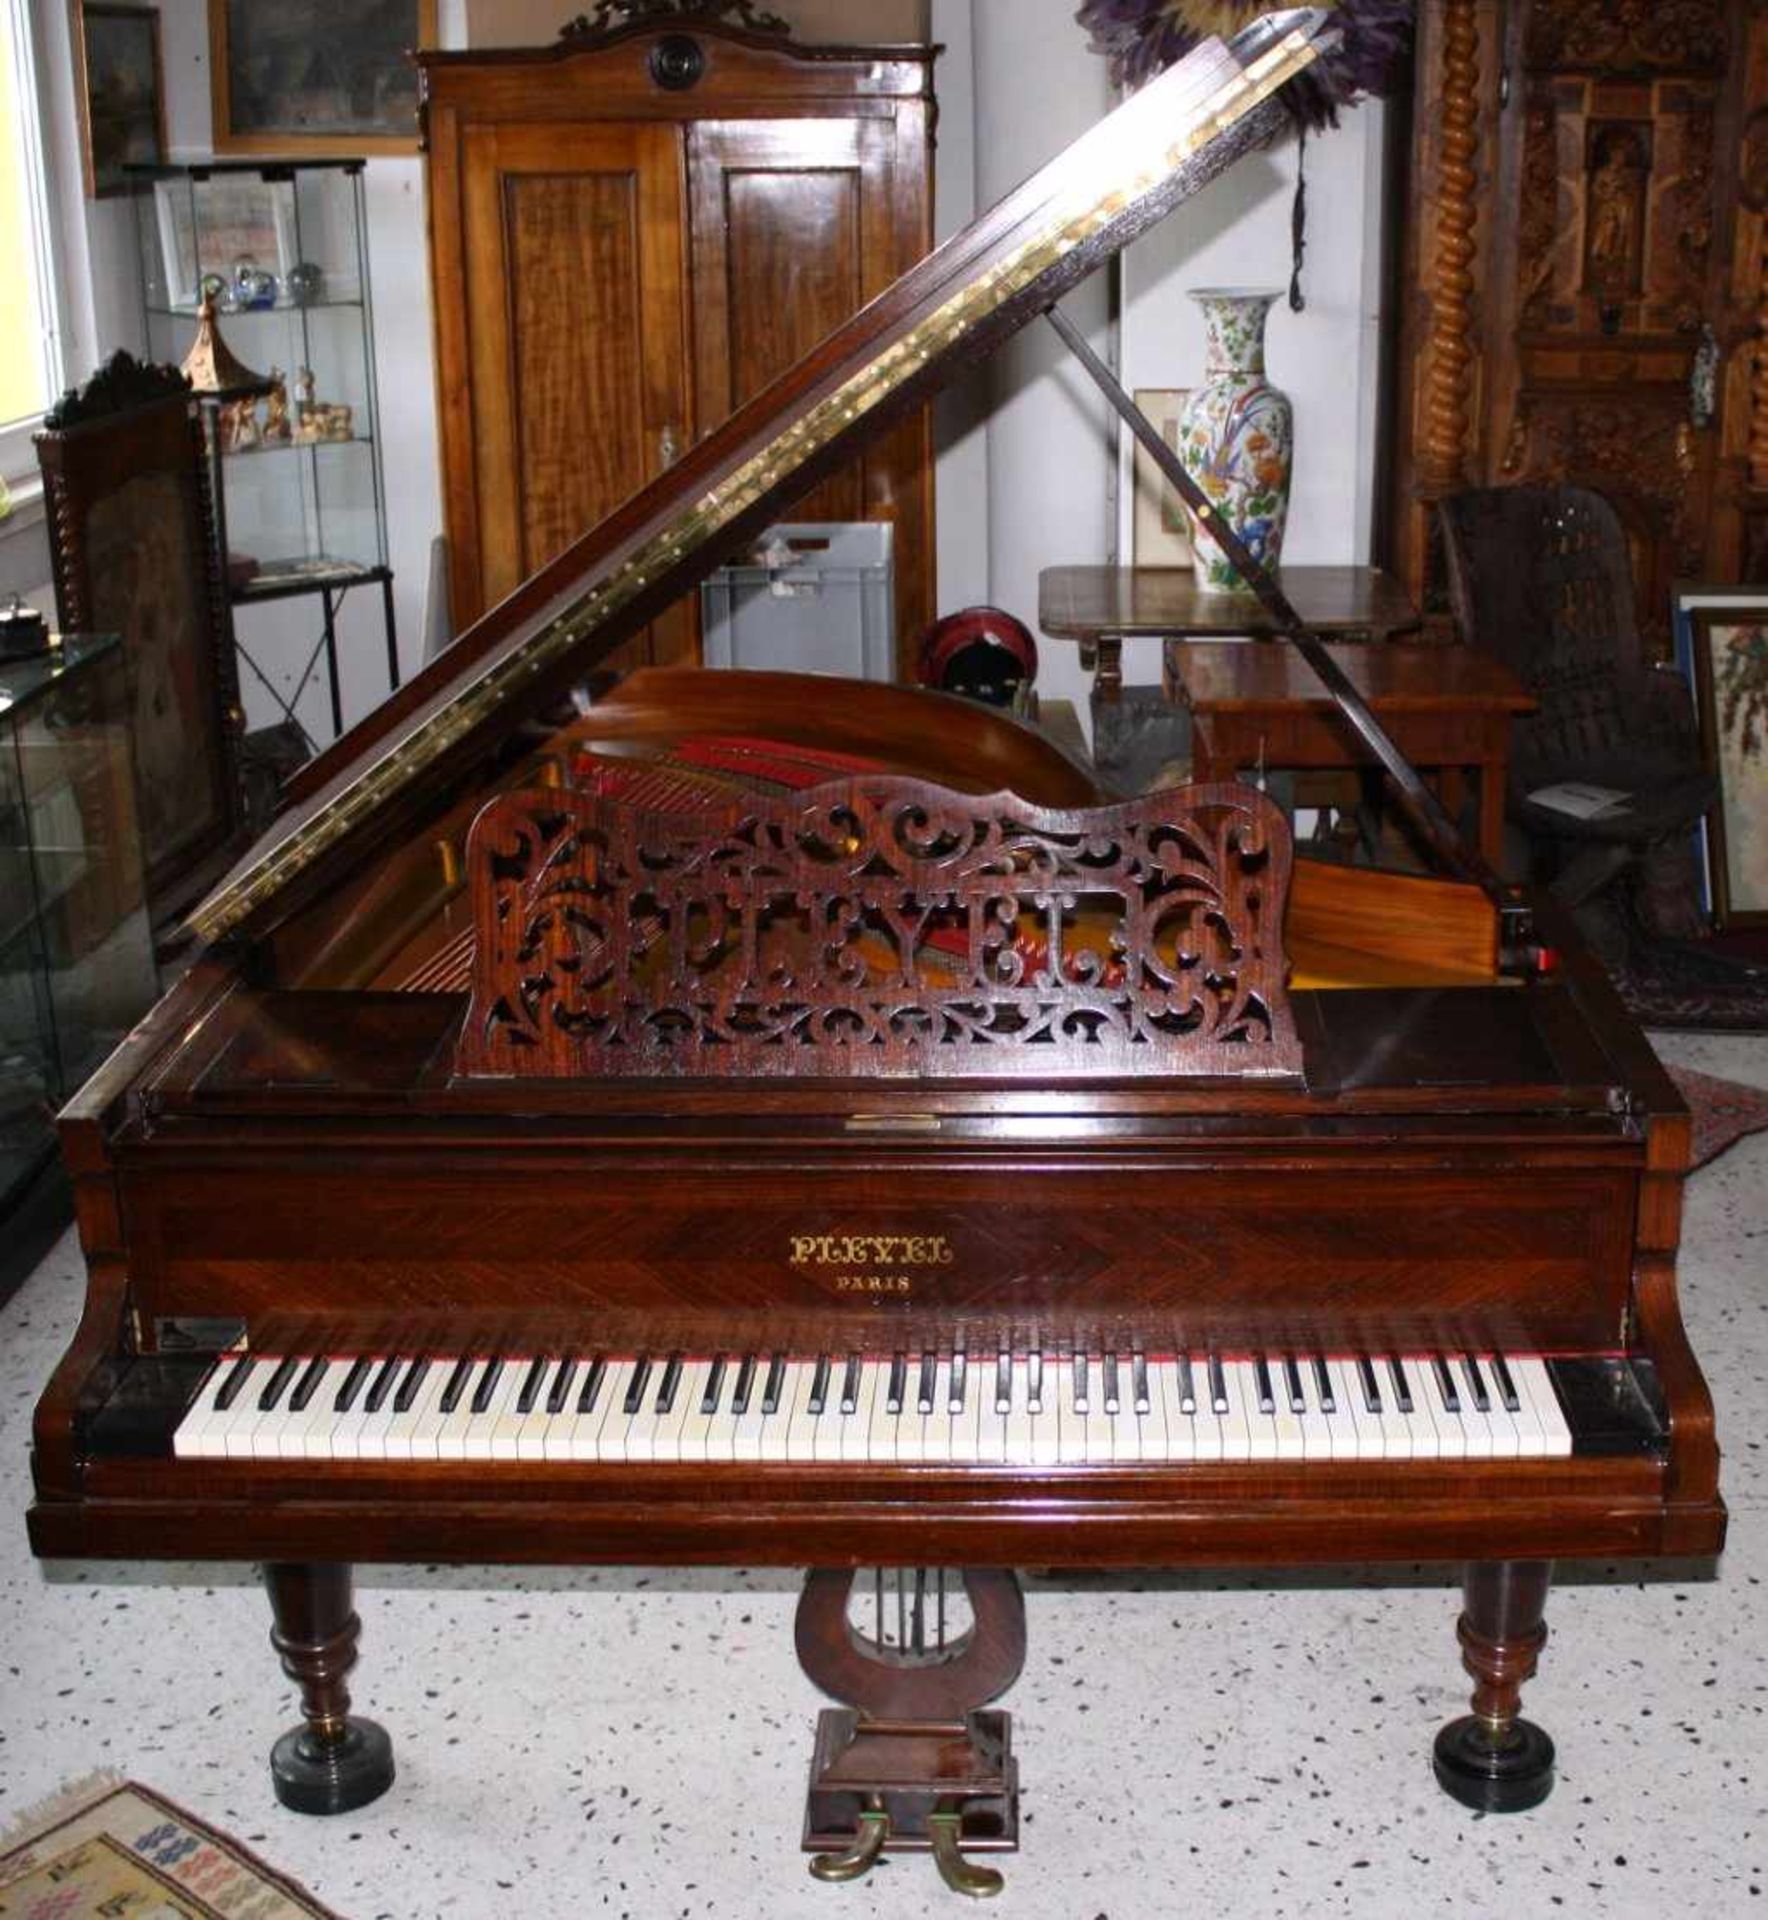 Pleyel Flügel aus dem Jahr 1904 - Lieblingsmarke von Chopinmit der Seriennummer 132202. Der